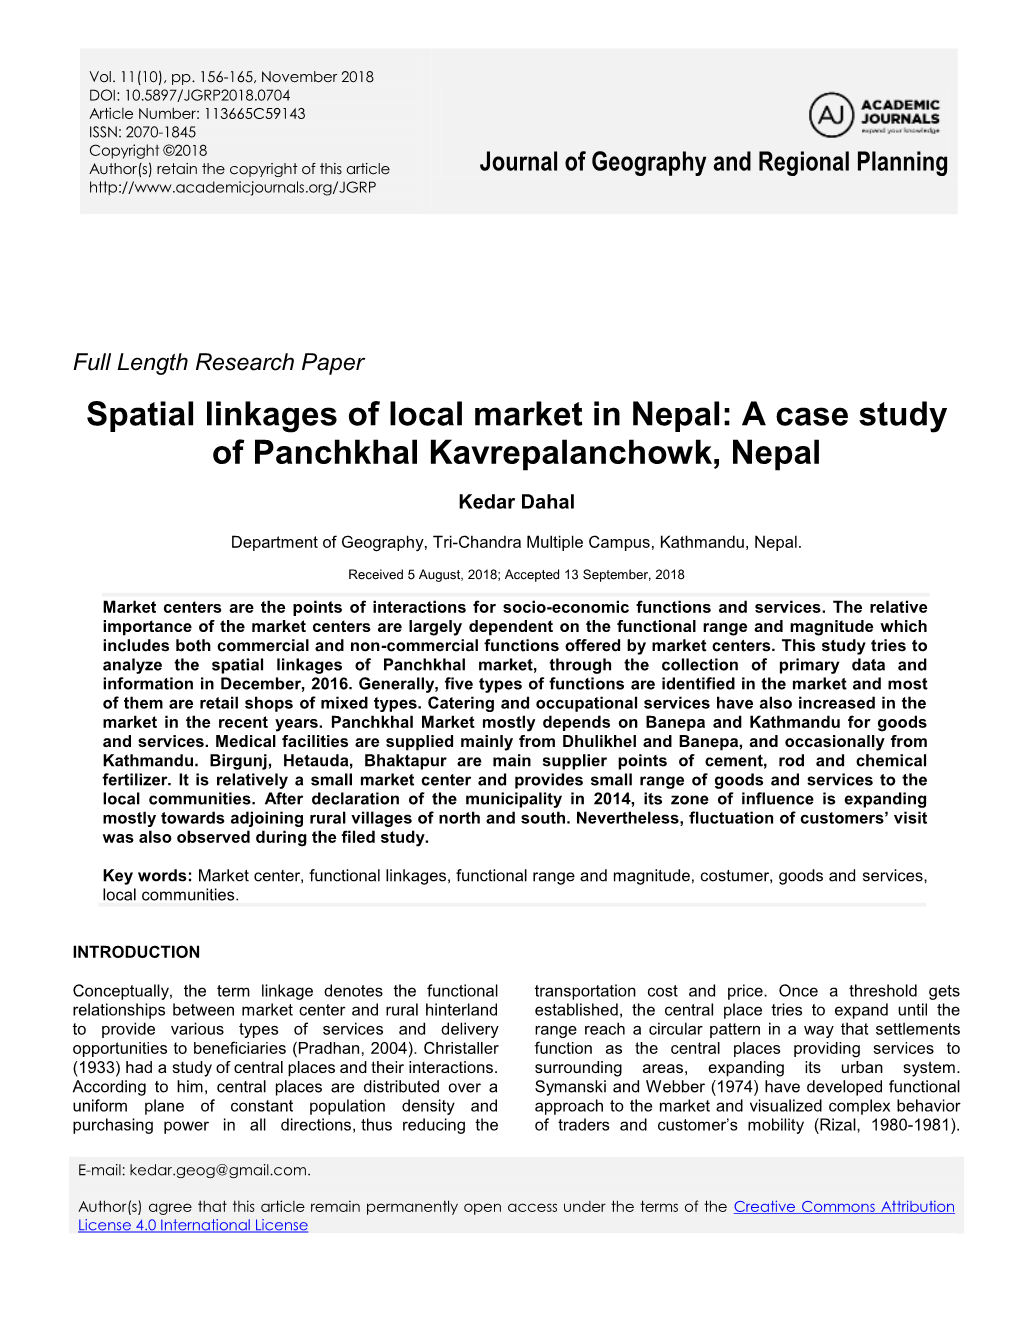 A Case Study of Panchkhal Kavrepalanchowk, Nepal